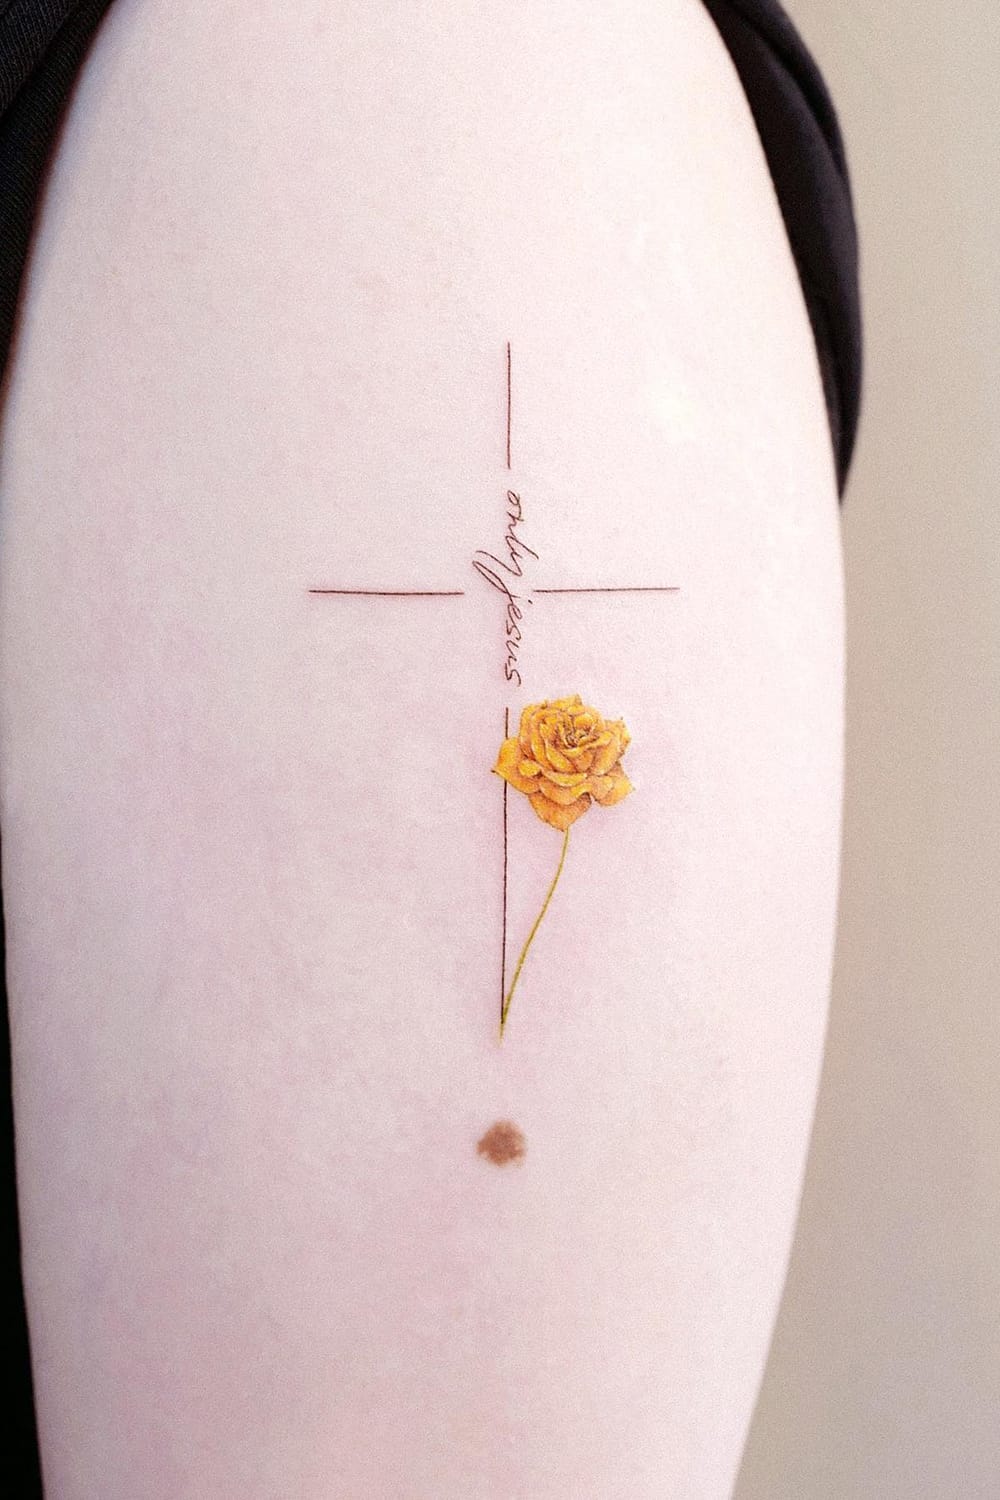 Small Flower Cross Tattoo